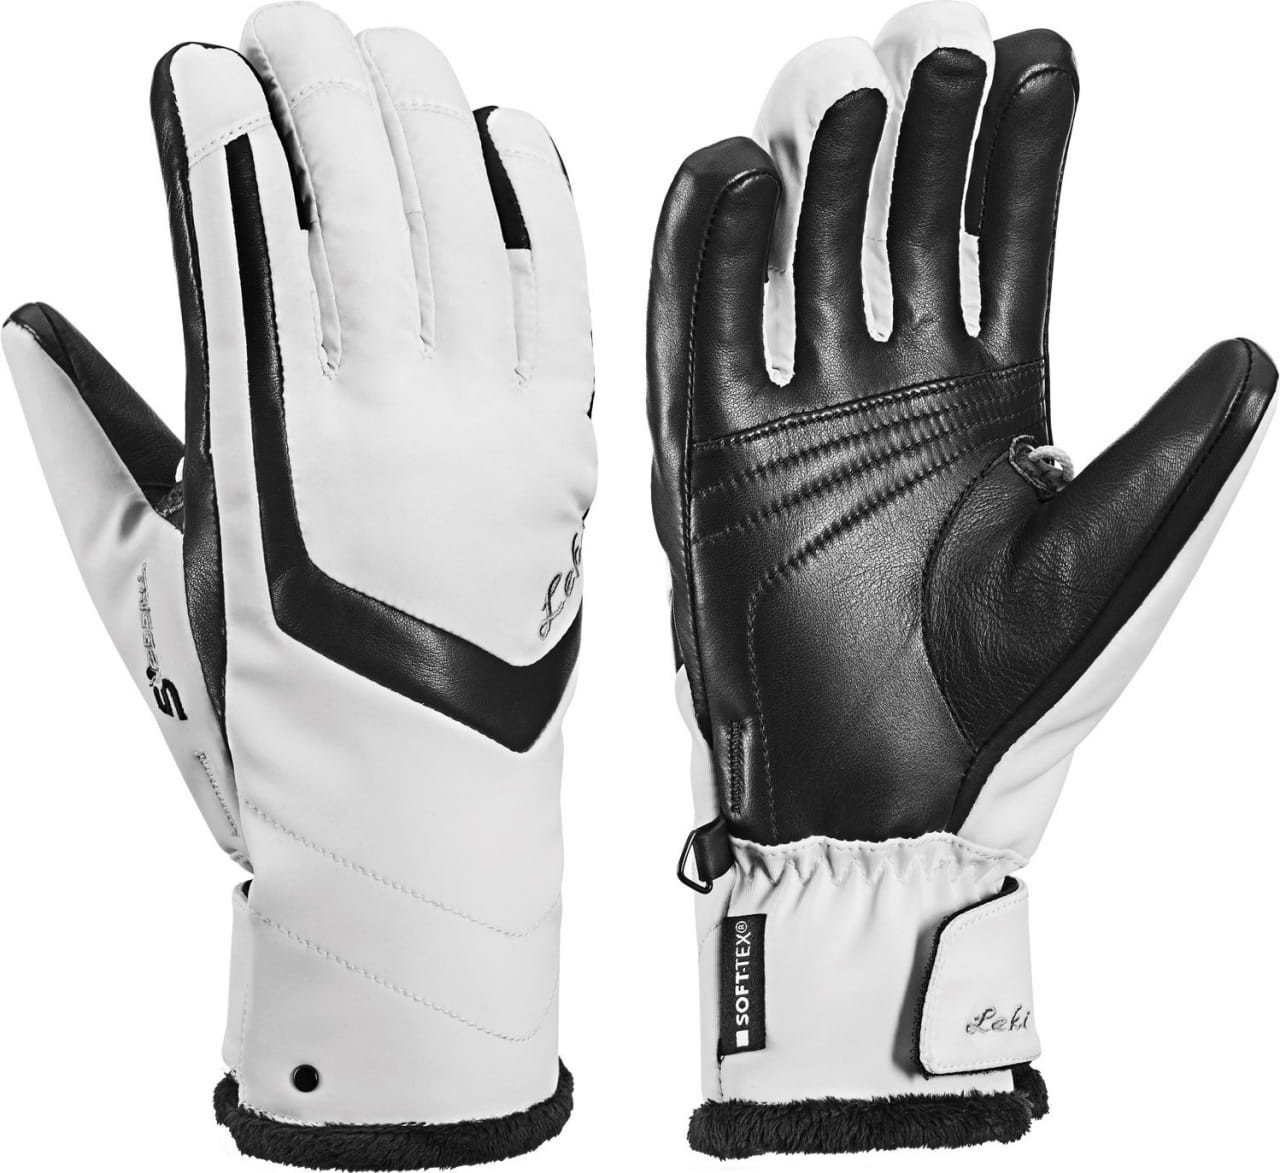 Ski Gloves Leki Stella S White/Black 7,5 Ski Gloves